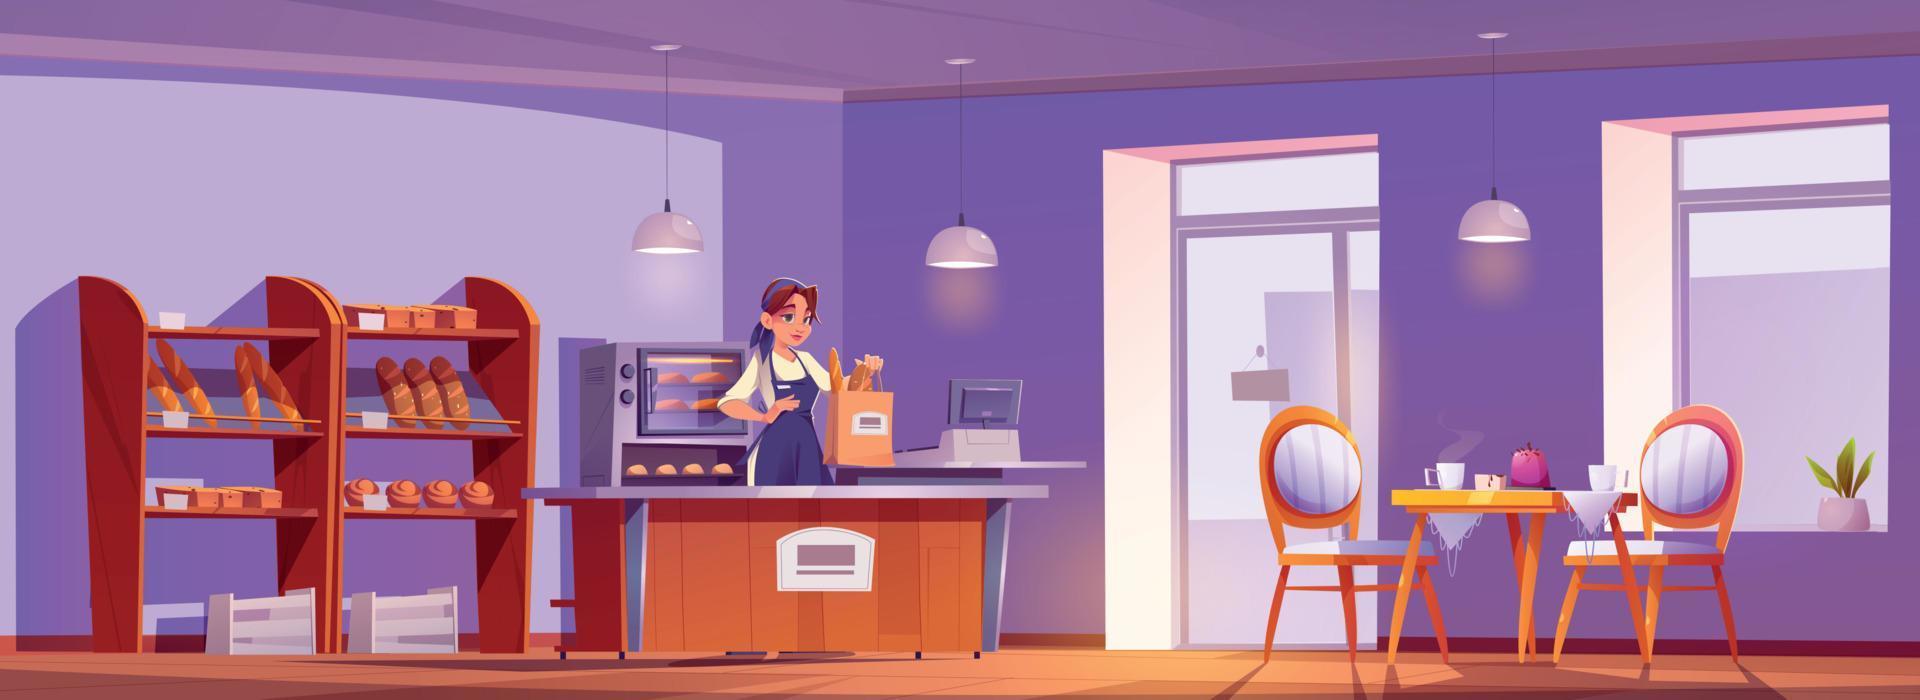 tecknad serie bageri interiör med kvinna säljare vektor